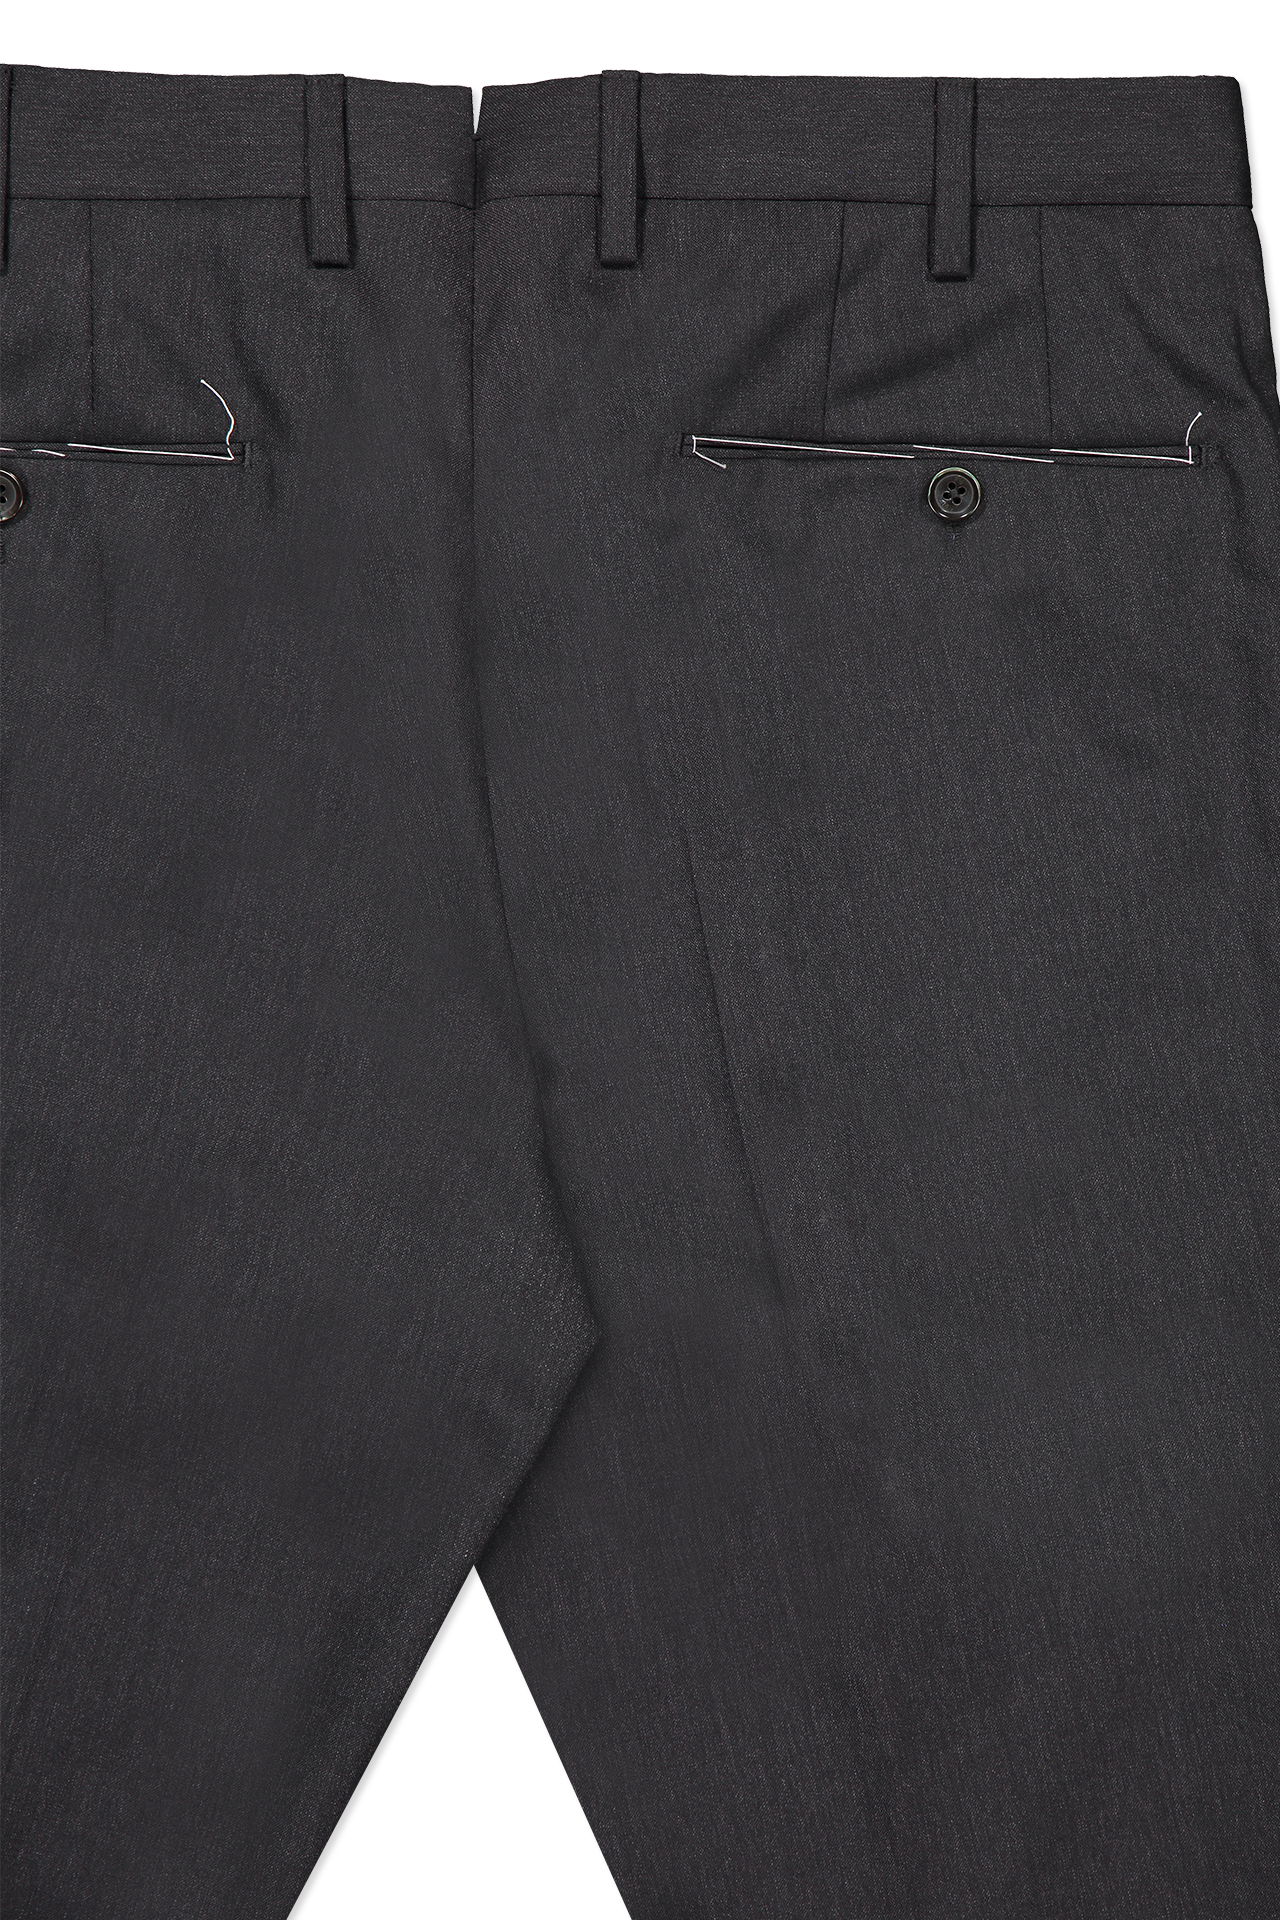 PT Wool Trouser Dark Charcoal Back Pocket Detail Image (600670404619)